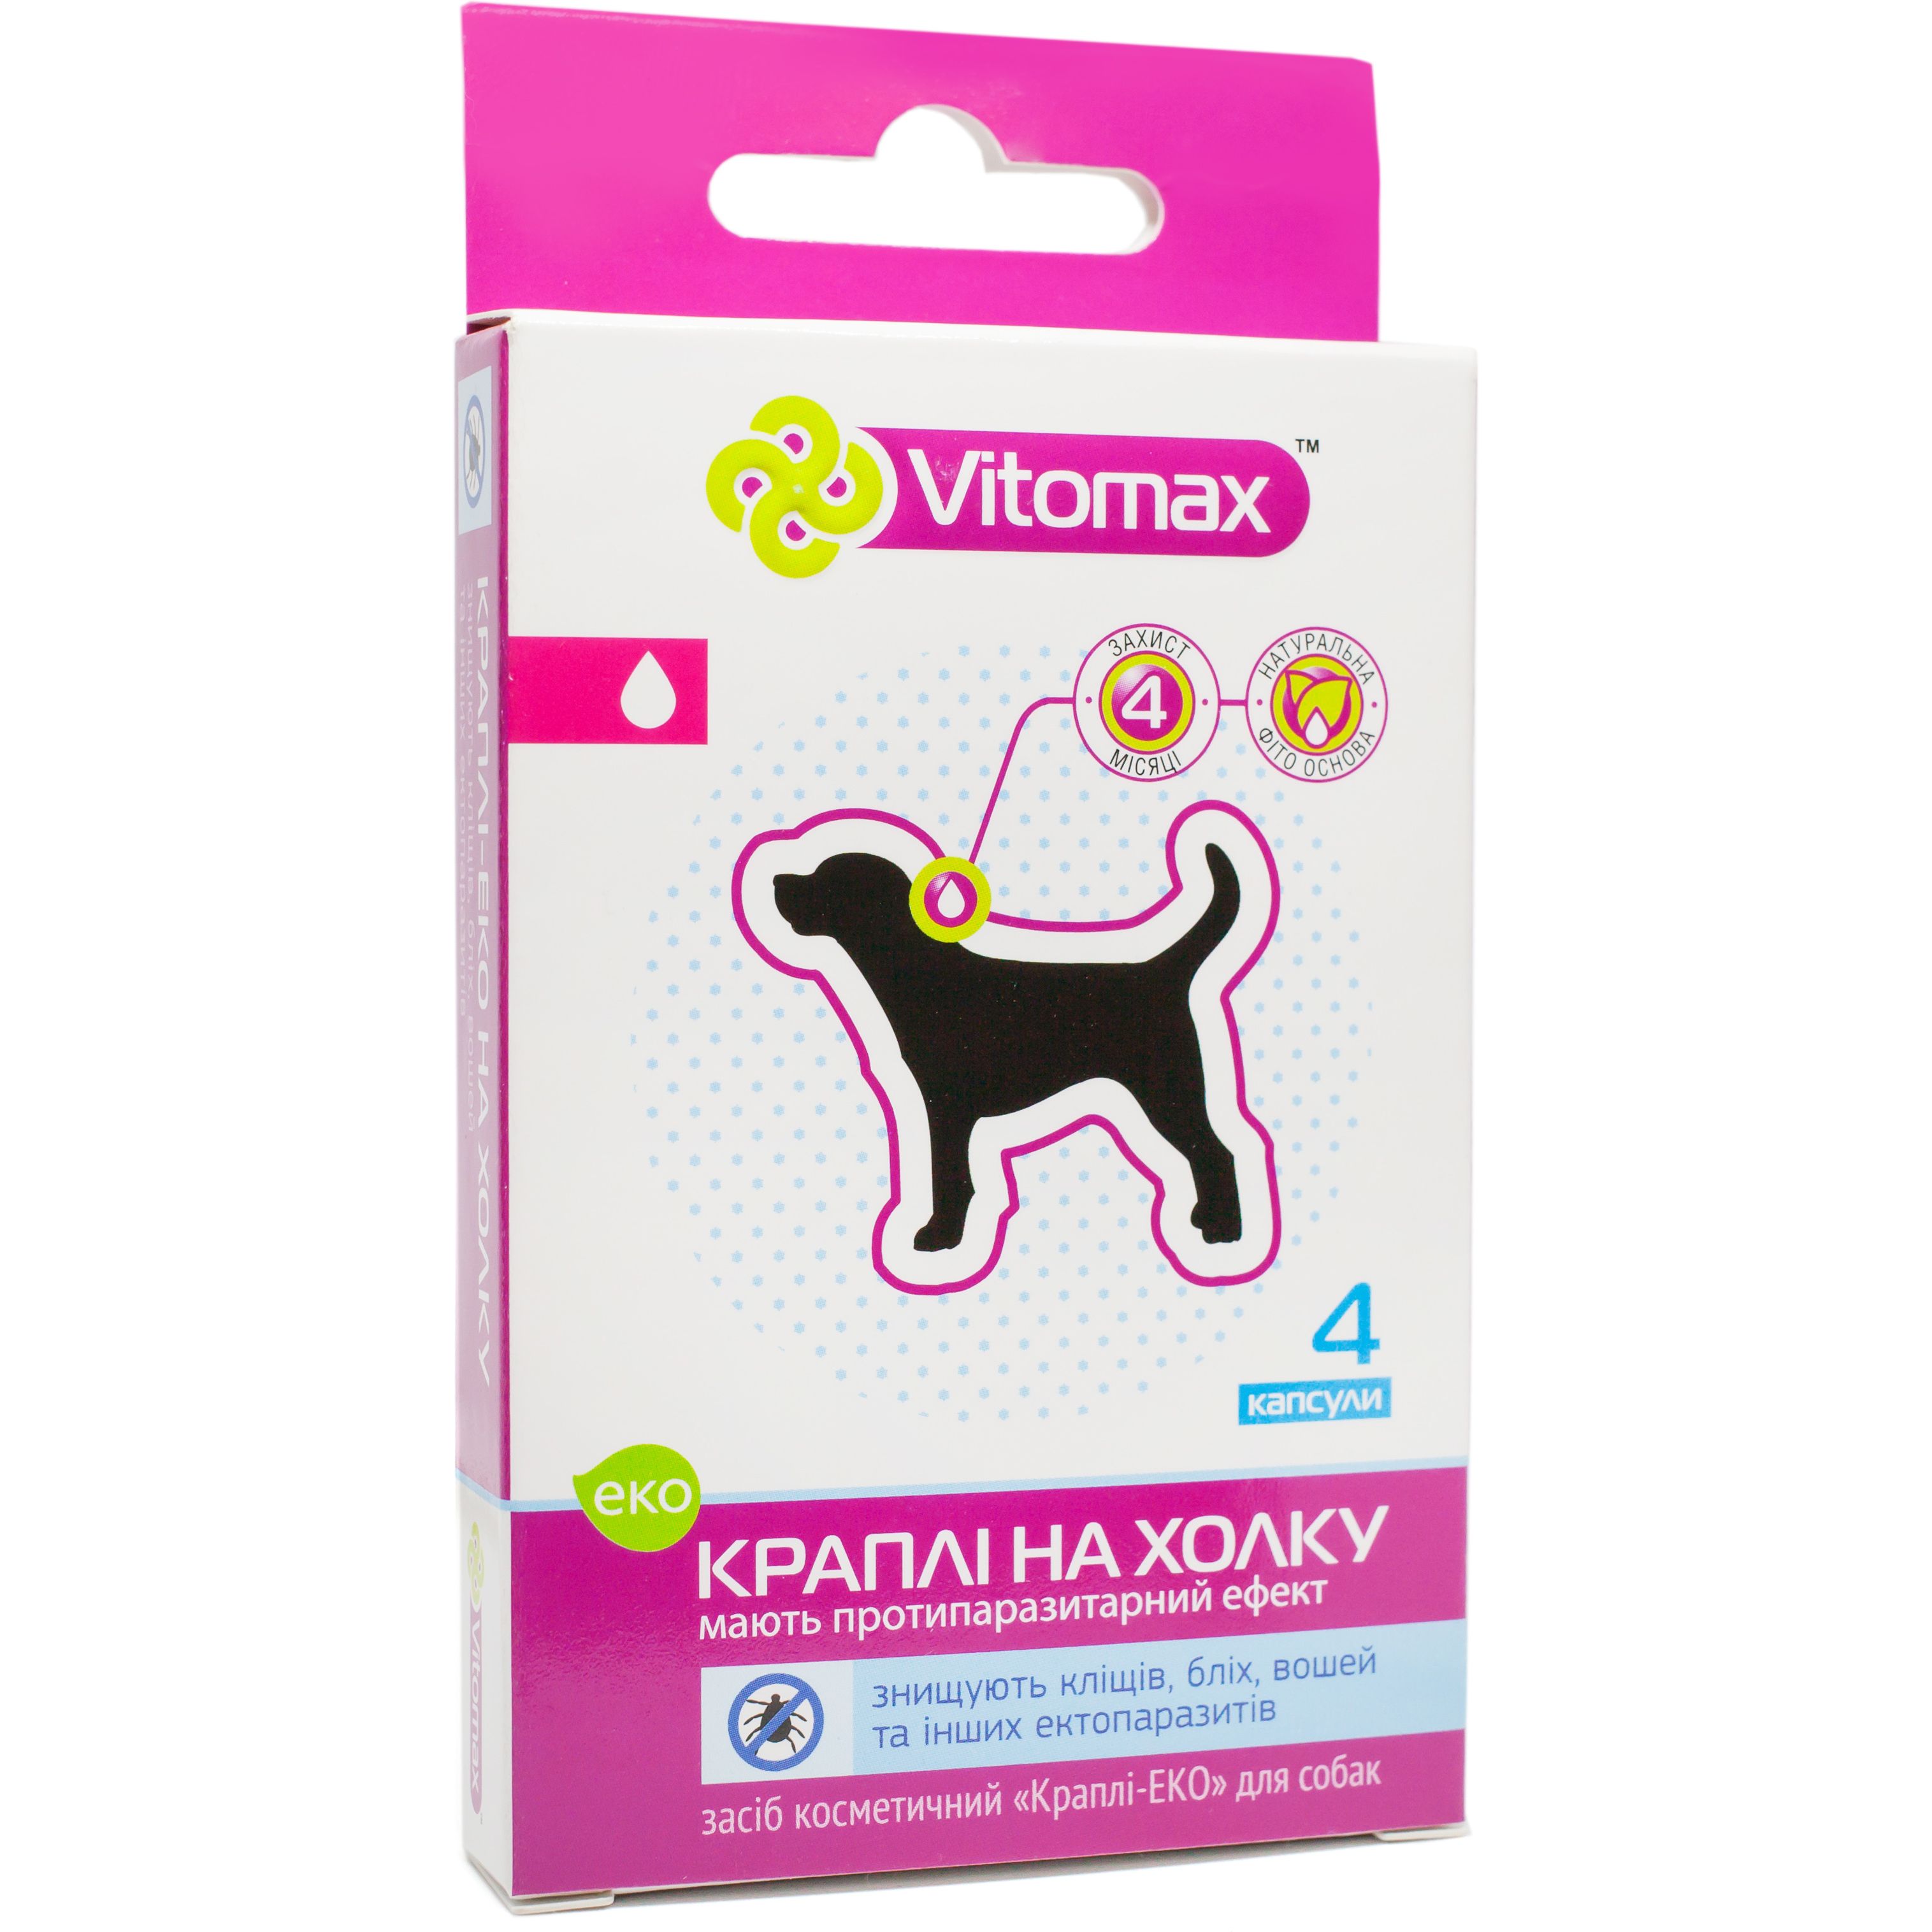 Еко-краплі на холку Vitomax протипаразитарні для собак, 0.8 мл, 4 піпетки - фото 1